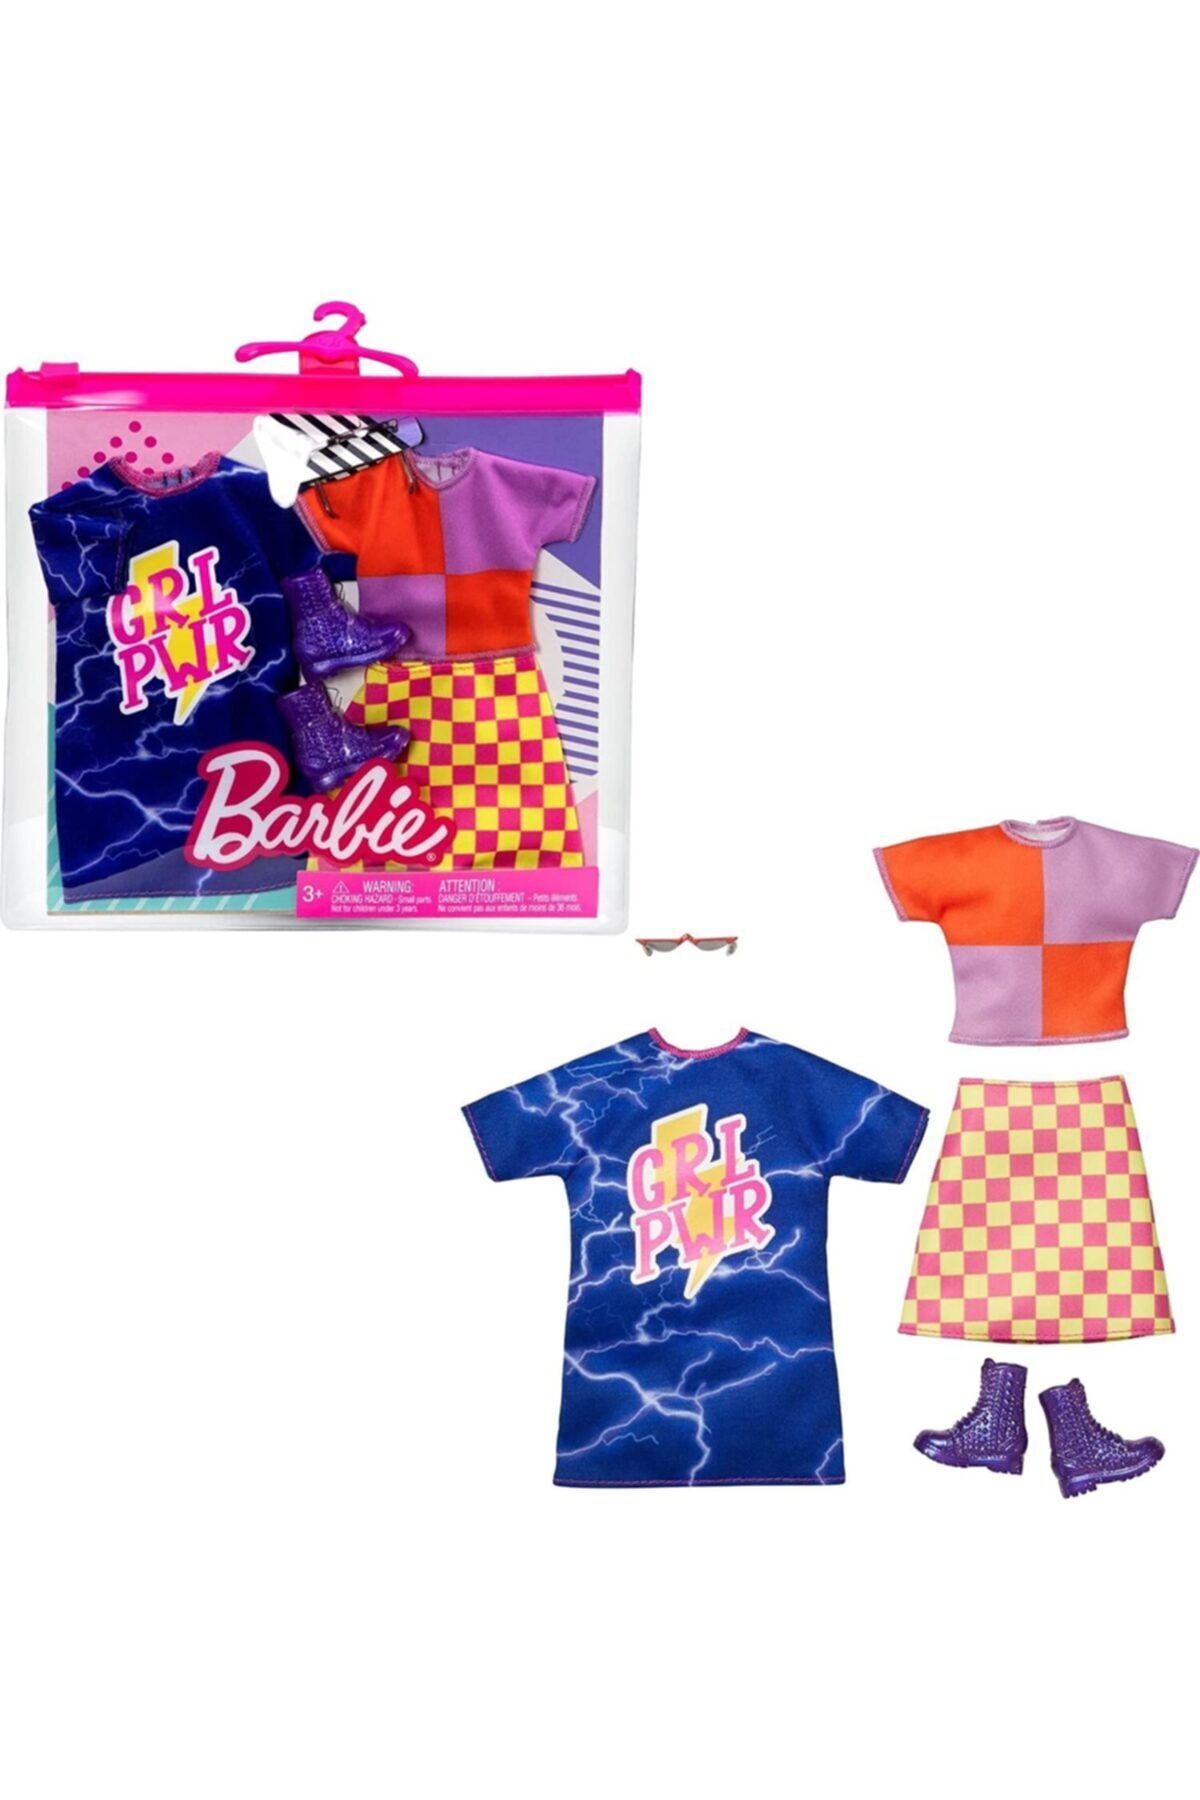 Barbie 'nin Kıyafet Koleksiyonu Ikili Paketler Sarı Pembe Kareli Etek Hbv69